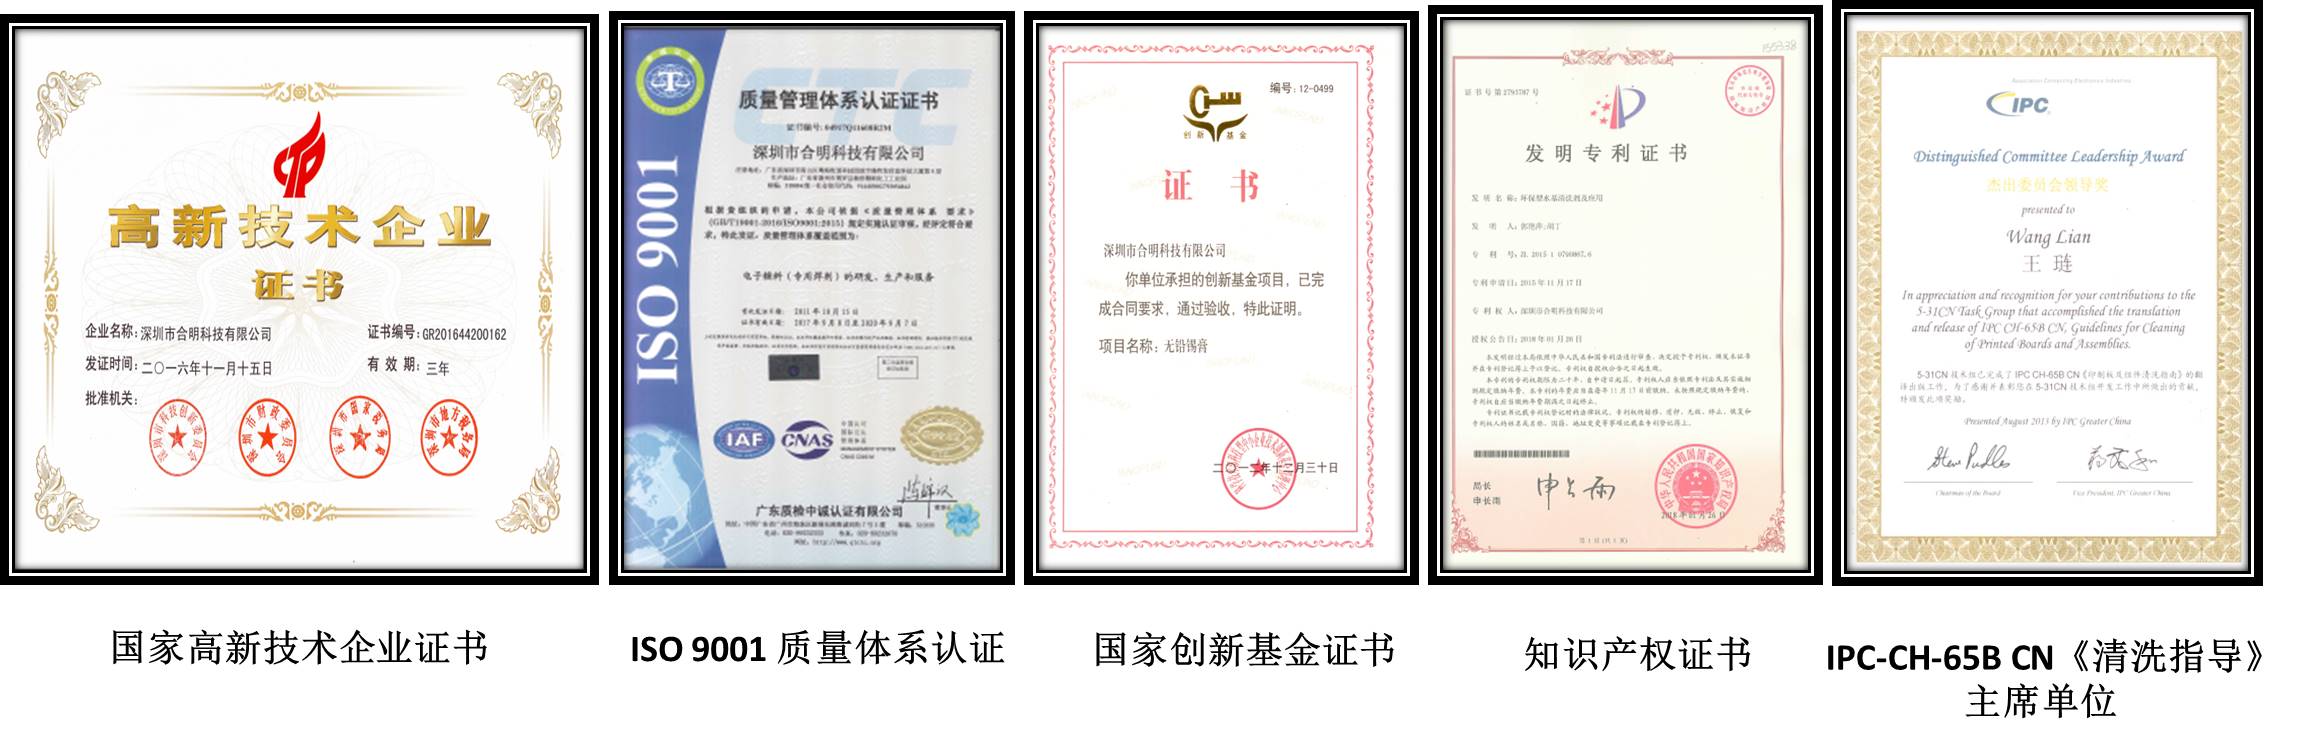 尊龙凯时科技声誉资质证书.jpg